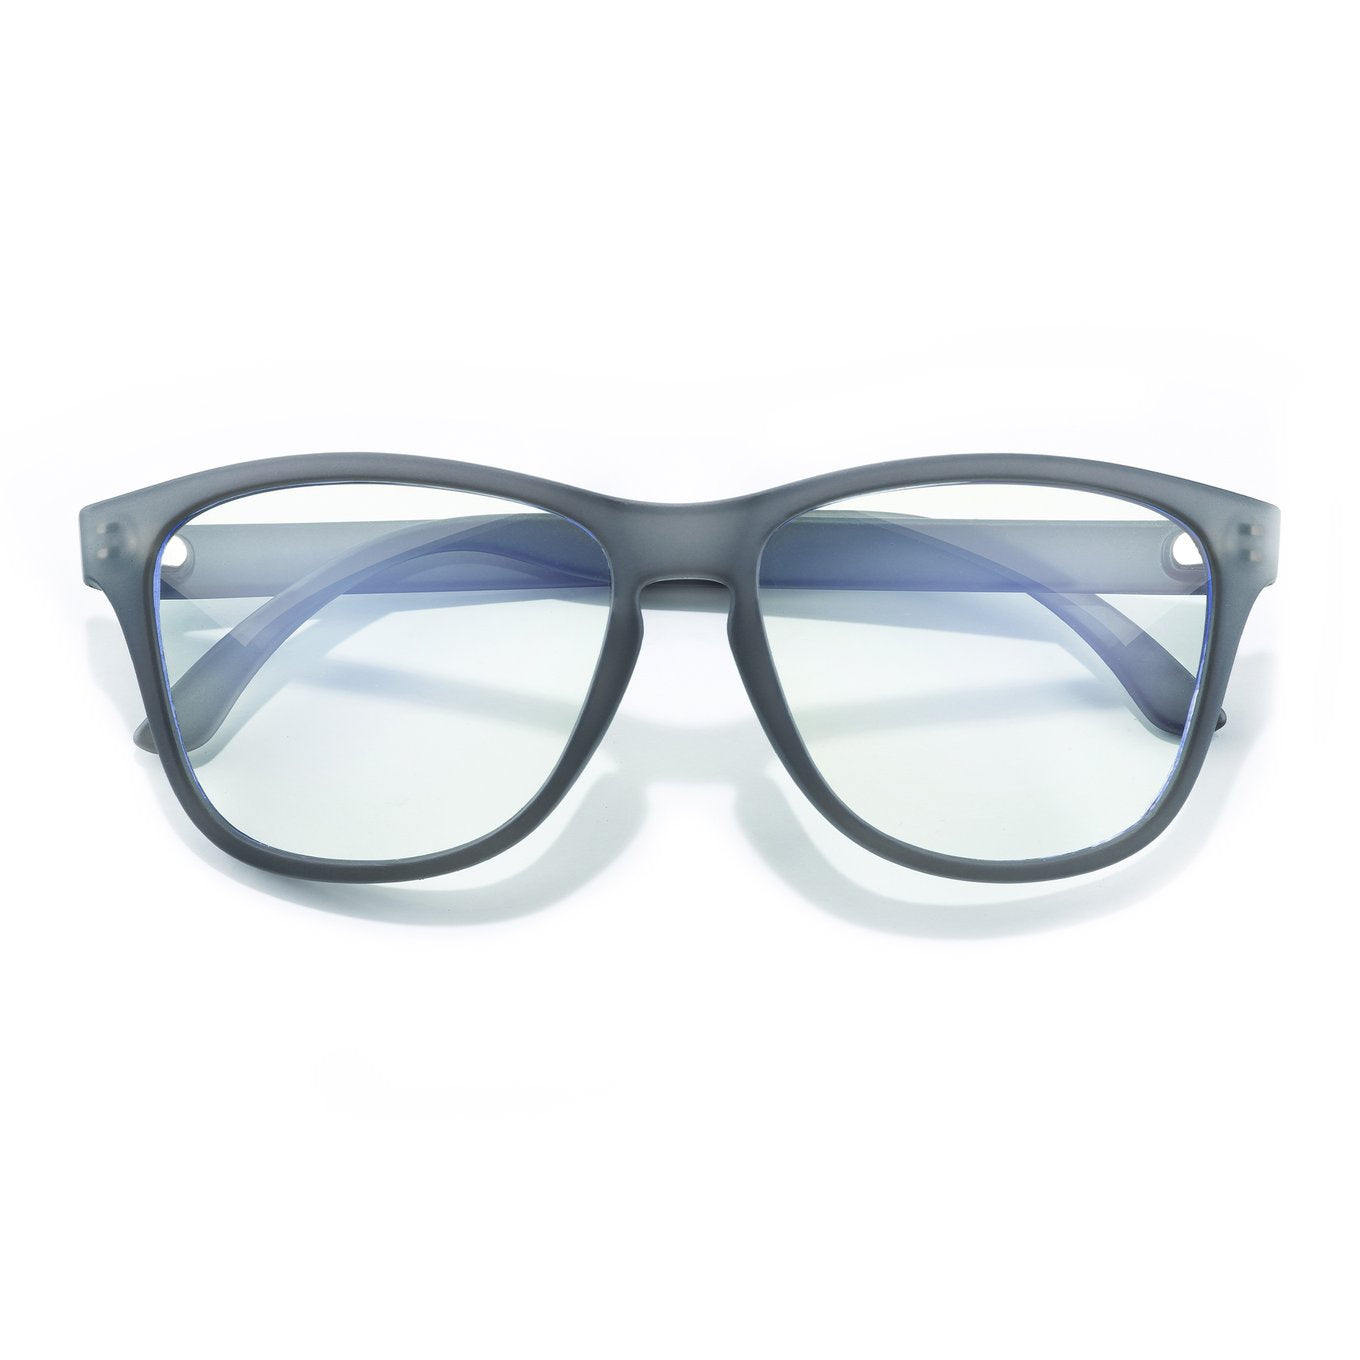 SUNSKI Kids' Blue Light Glasses - Headland Grey